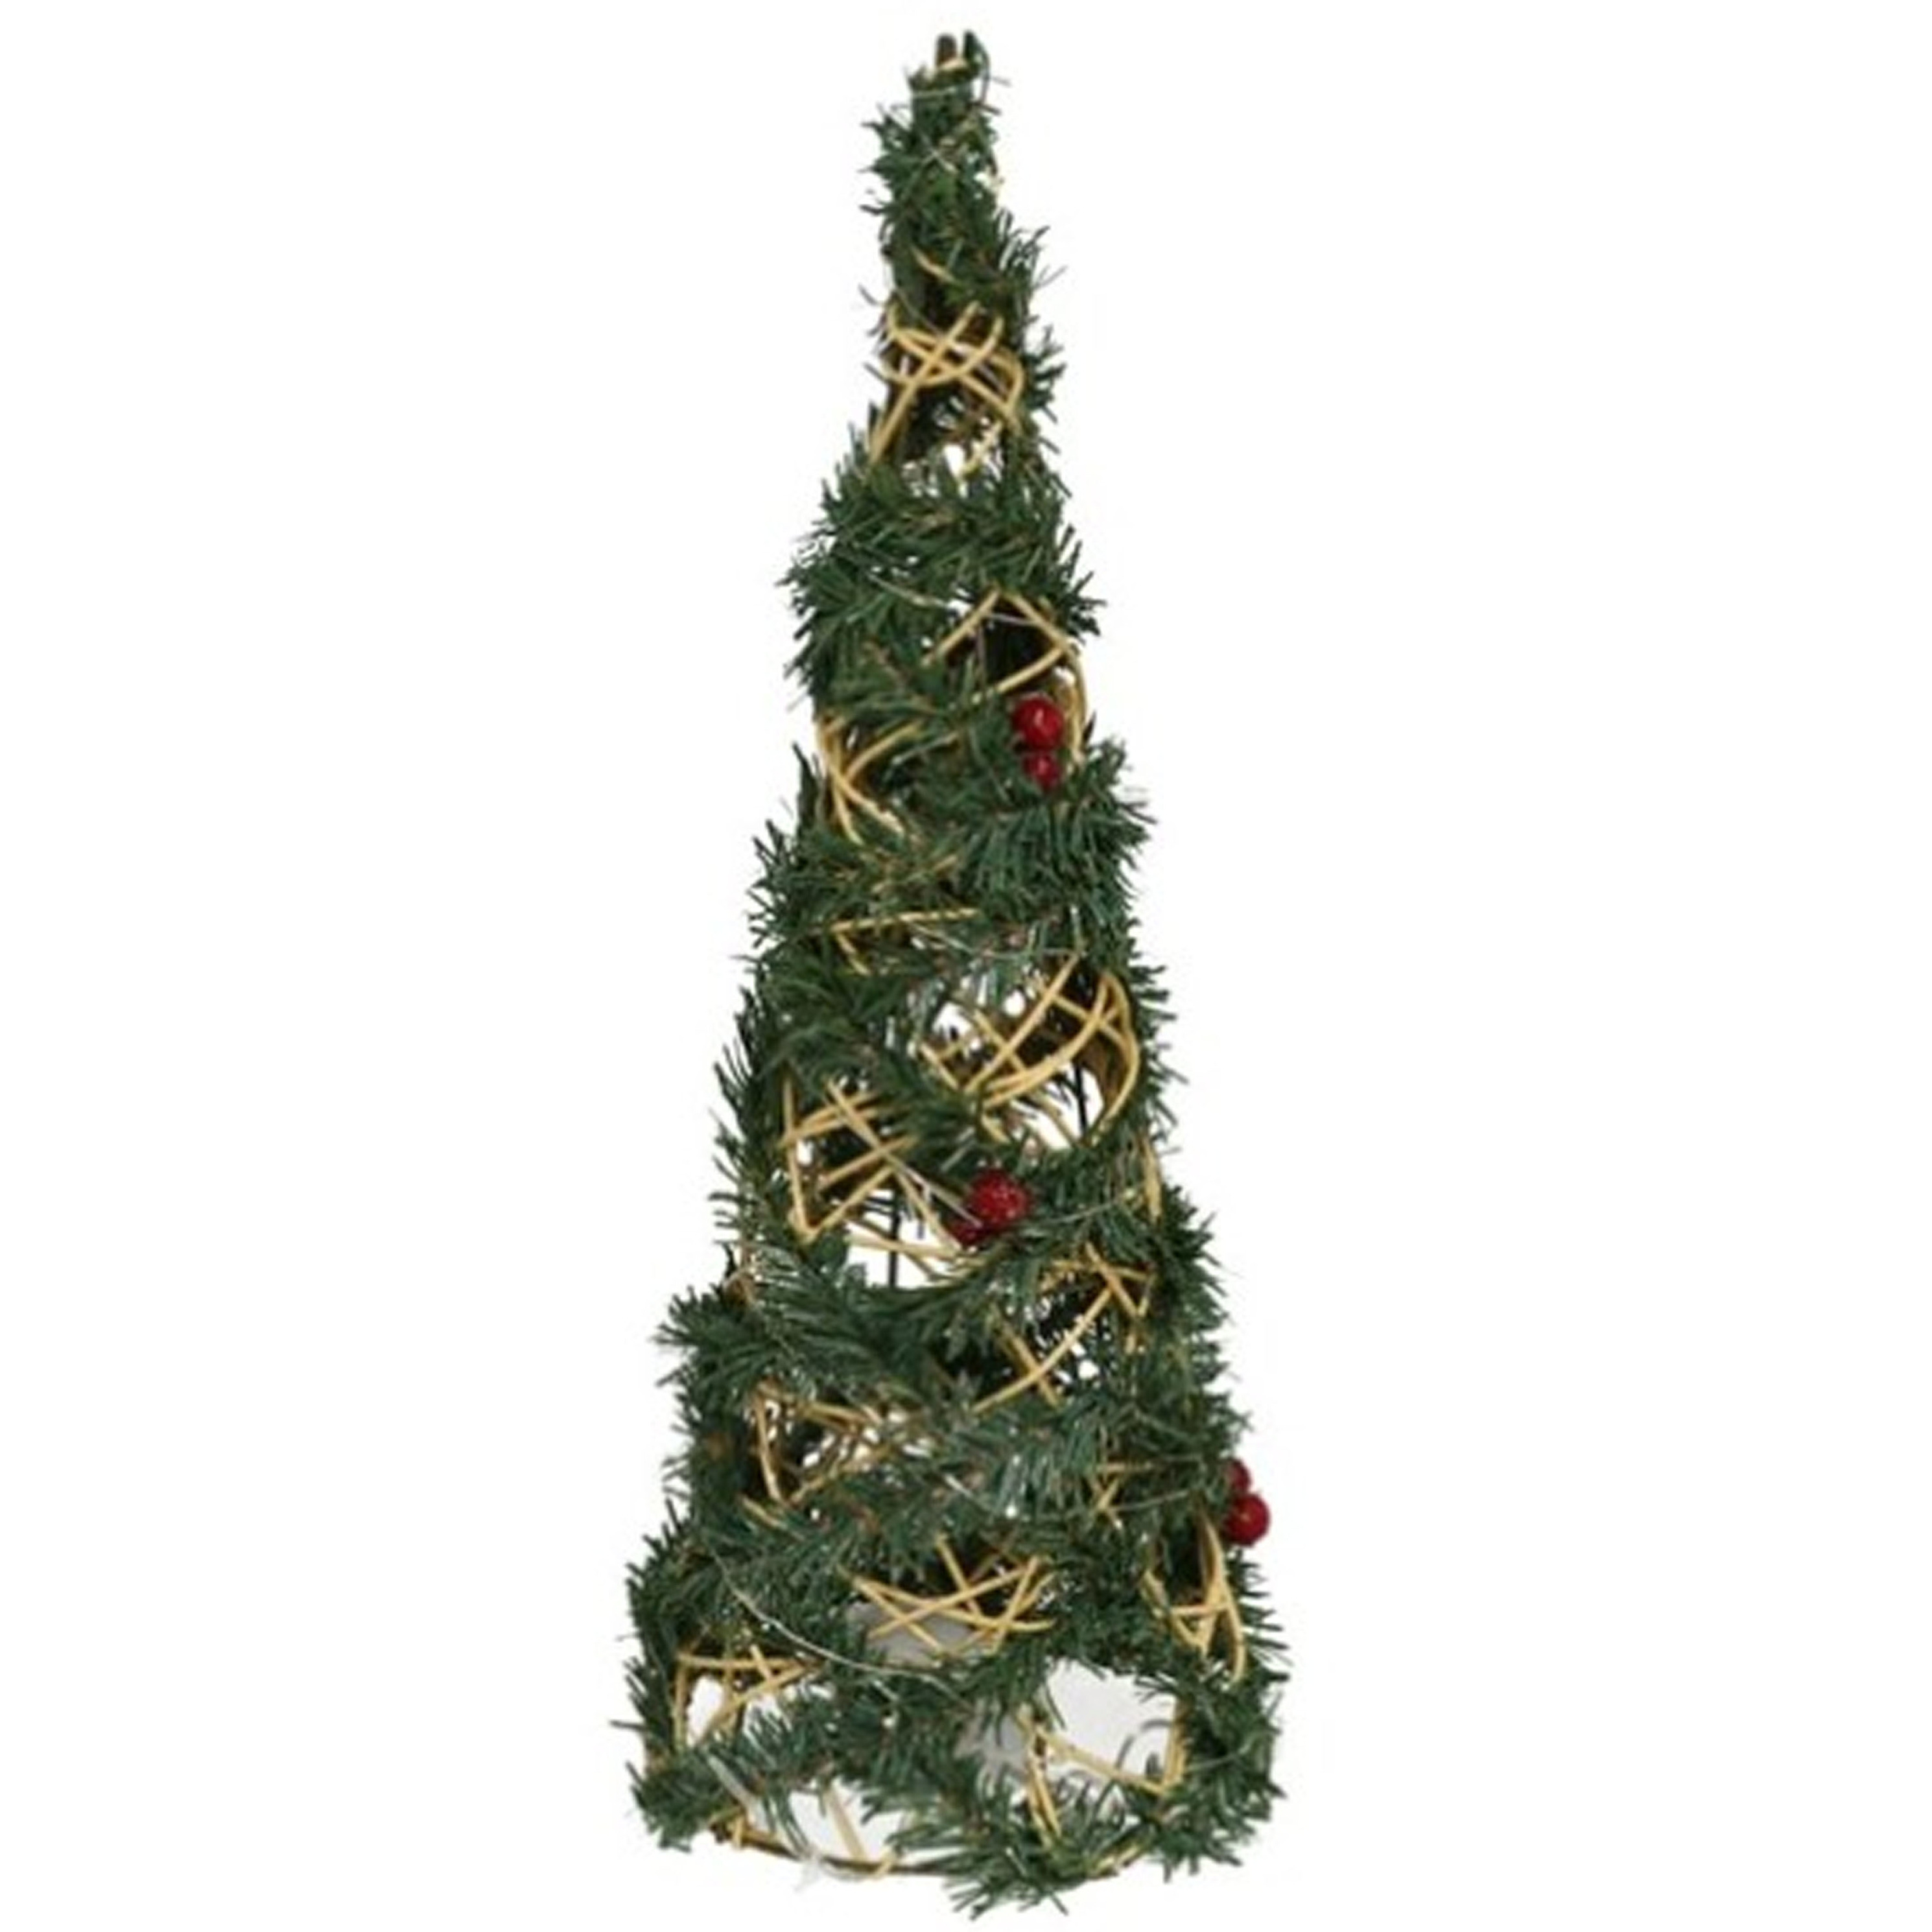 Kerstverlichting figuren Led kegel kerstboom draad-groen 40 cm 20 leds